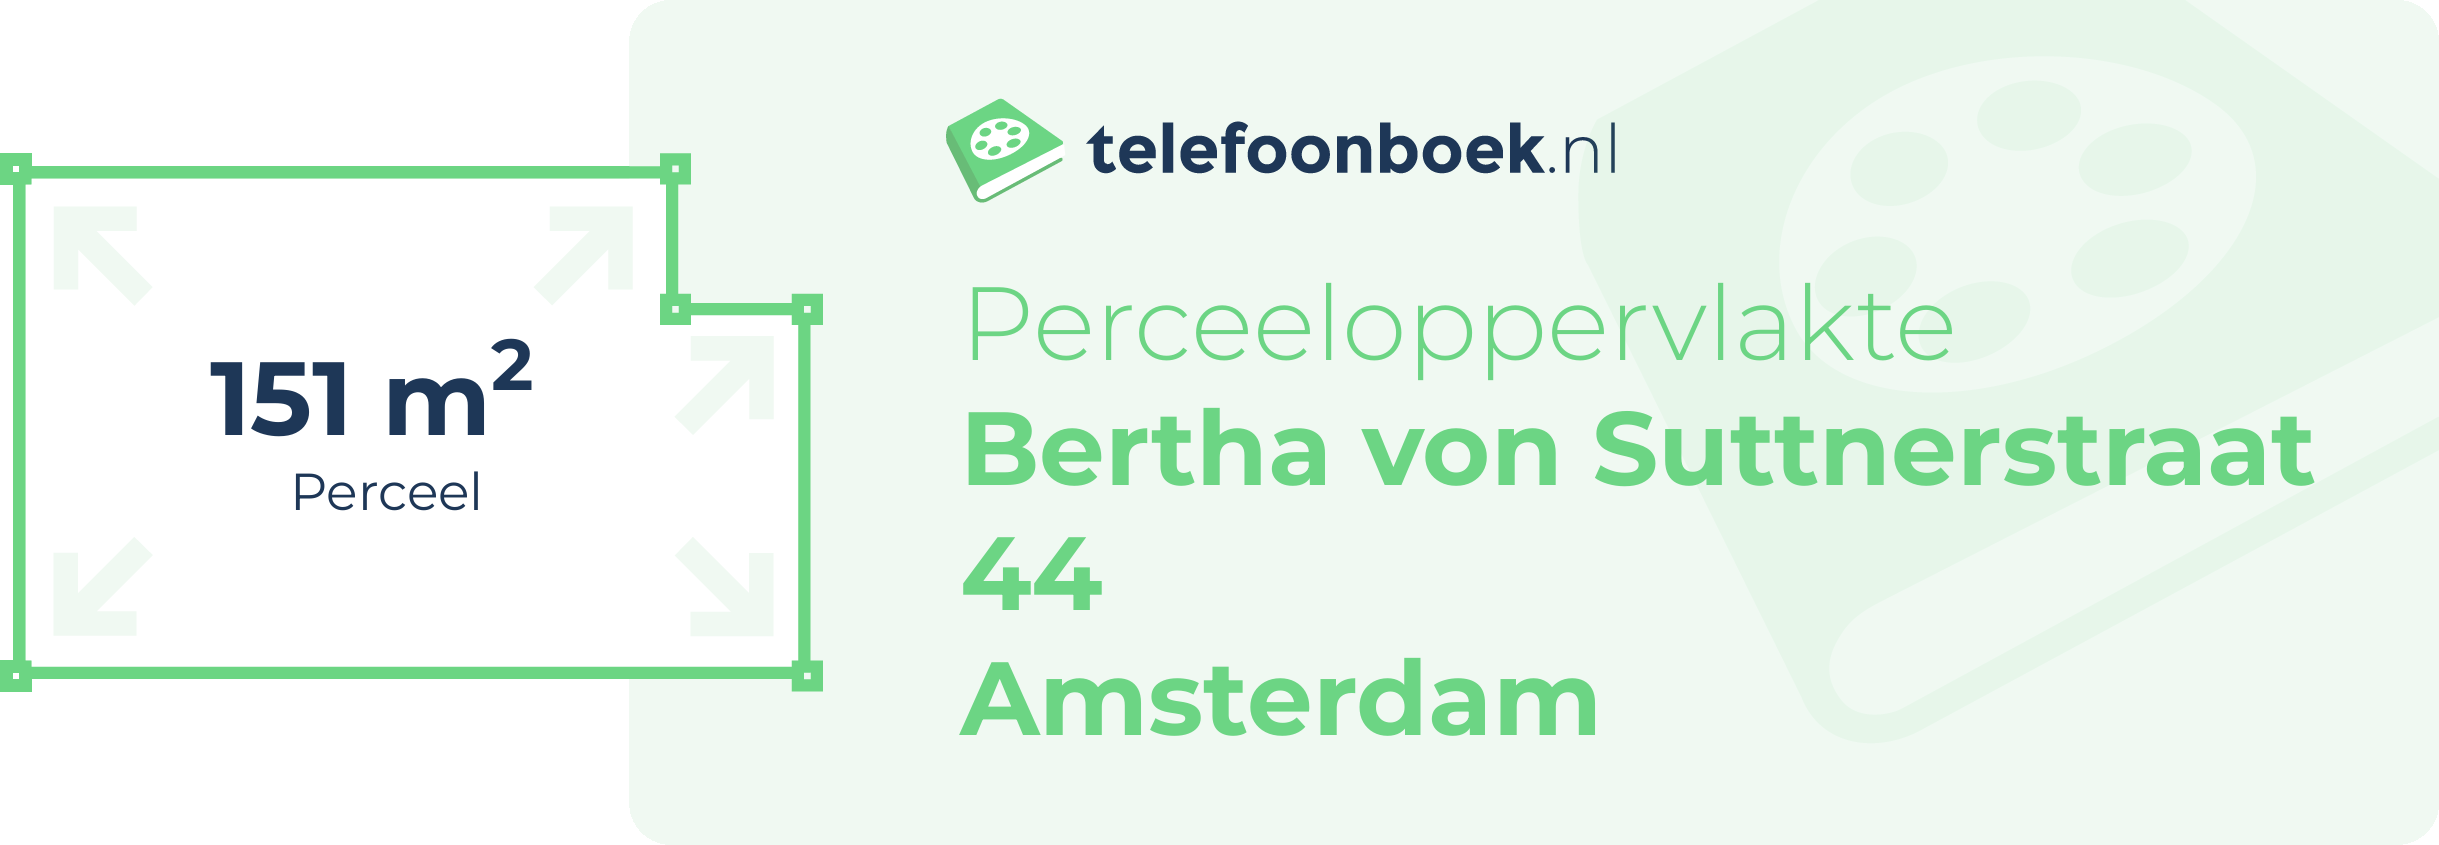 Perceeloppervlakte Bertha Von Suttnerstraat 44 Amsterdam